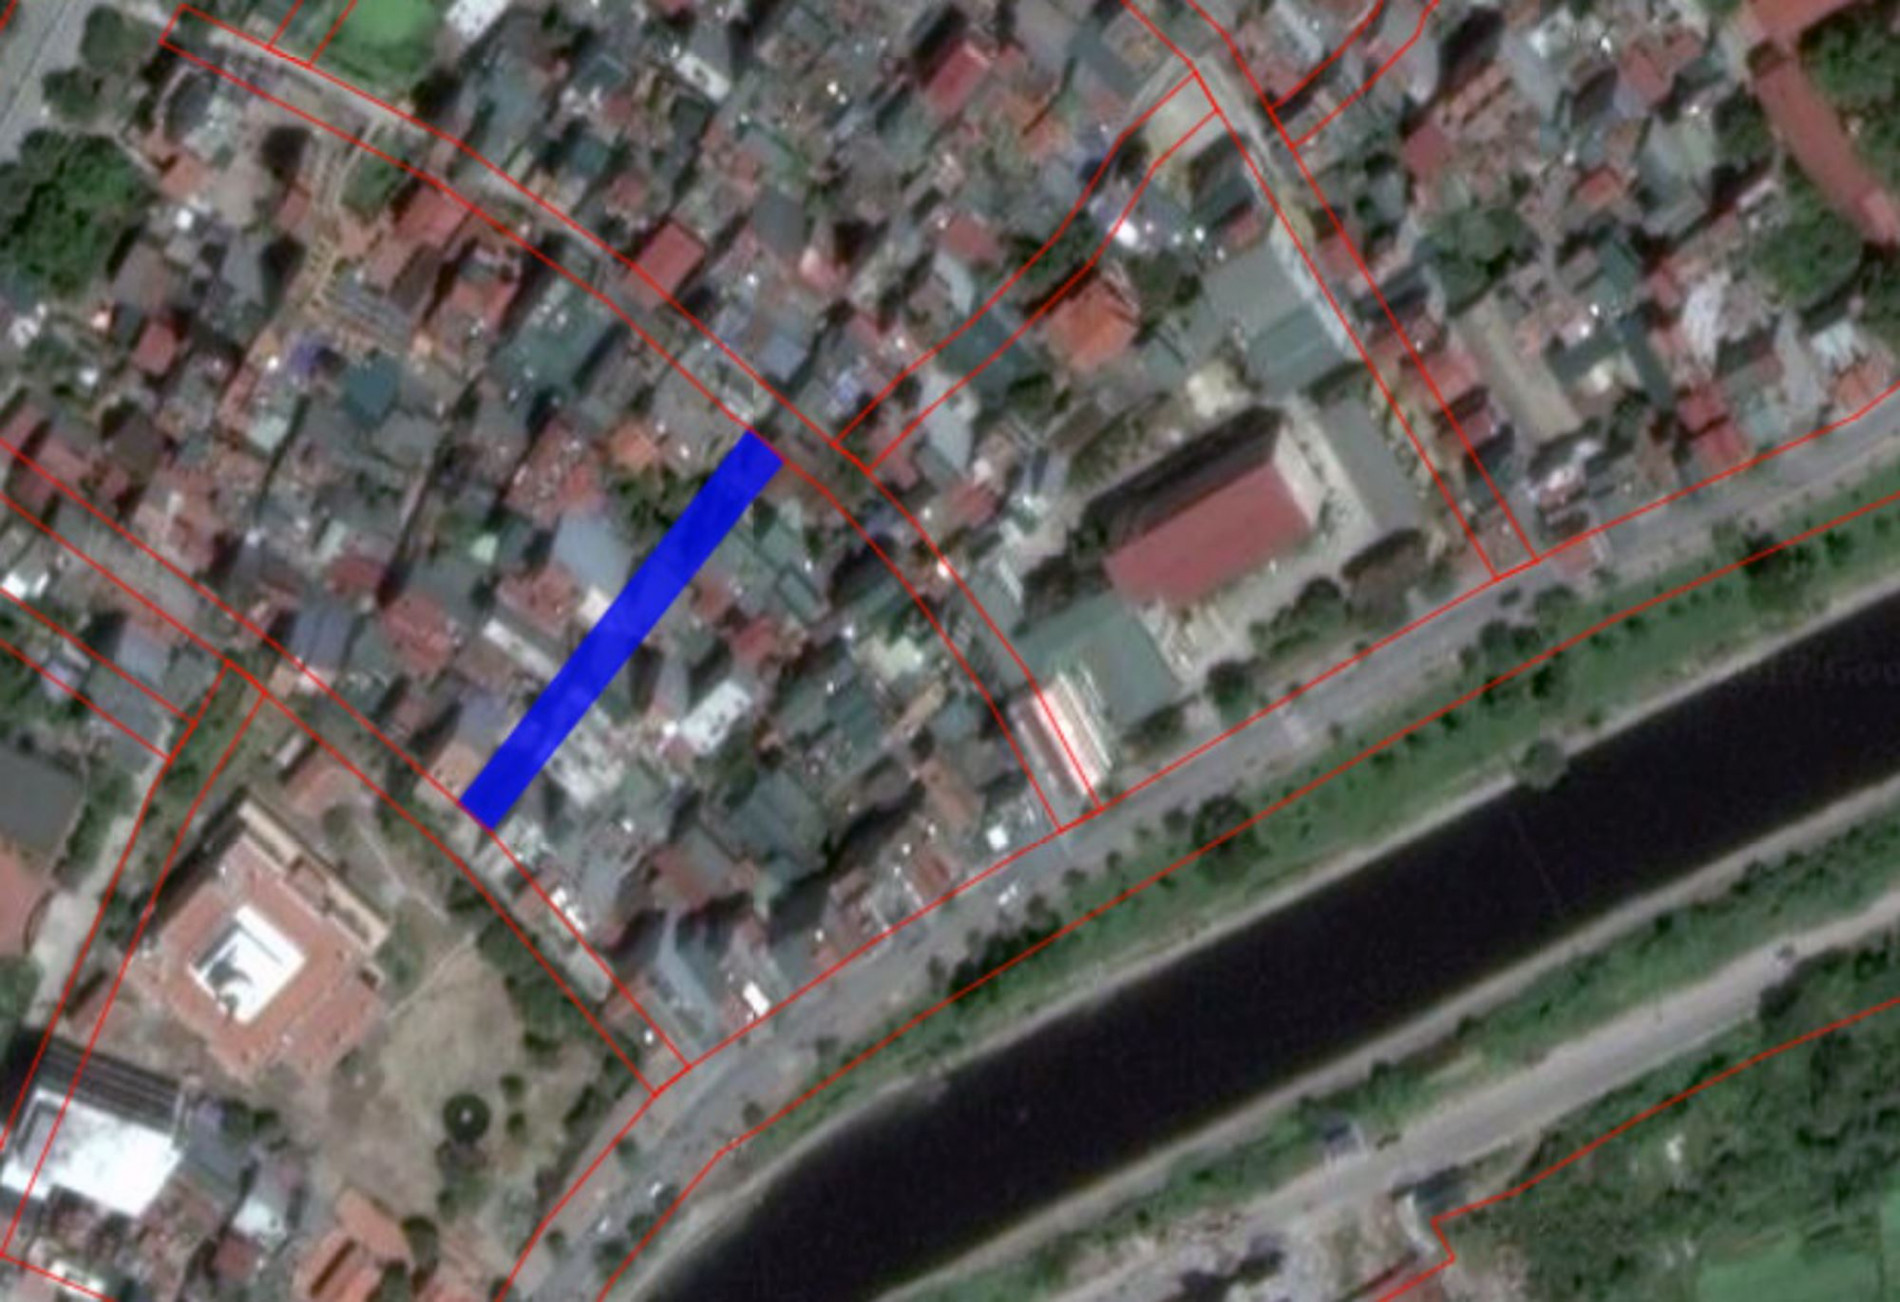 Những khu đất sắp thu hồi để mở đường ở xã Thanh Liệt, Thanh Trì, Hà Nội (phần 10)